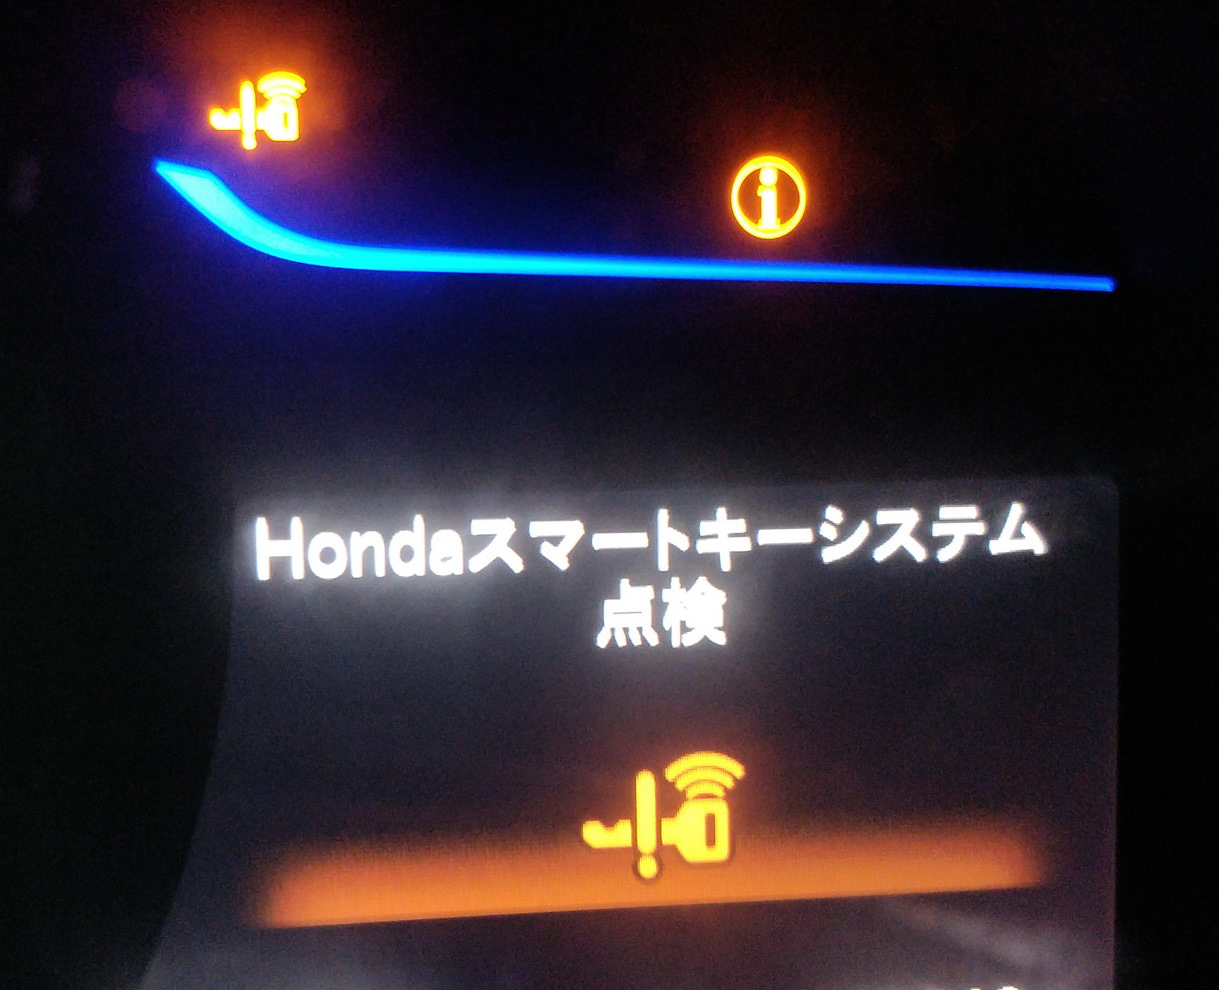 Ошибки на гибридах. Значки приборной панели Honda inspire cc2. Honda freed 2011 лампочки на панели приборов. Значки на панели Хонда фит гибрид. Датчики значки на панели Honda Fit 2002.